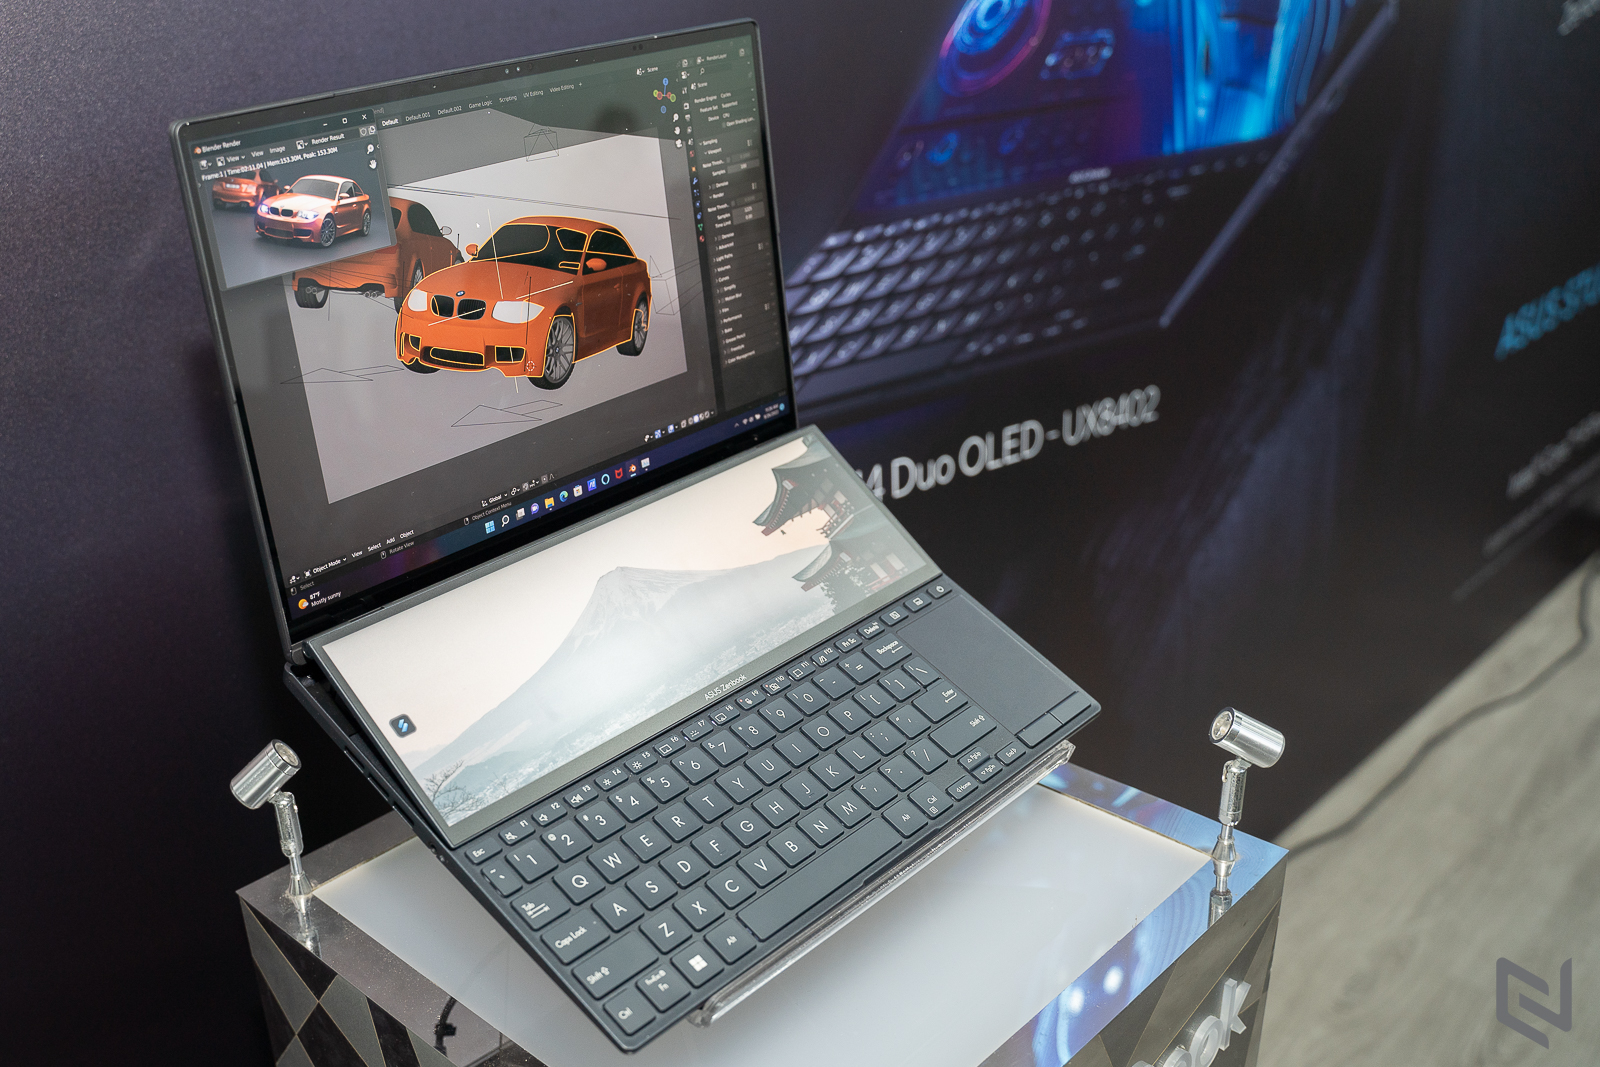 Trên tay laptop Zenbook Pro 14 Duo OLED với thiết kế 2 màn hình sắc nét và hiệu năng mạnh mẽ cho người dùng sáng tạo